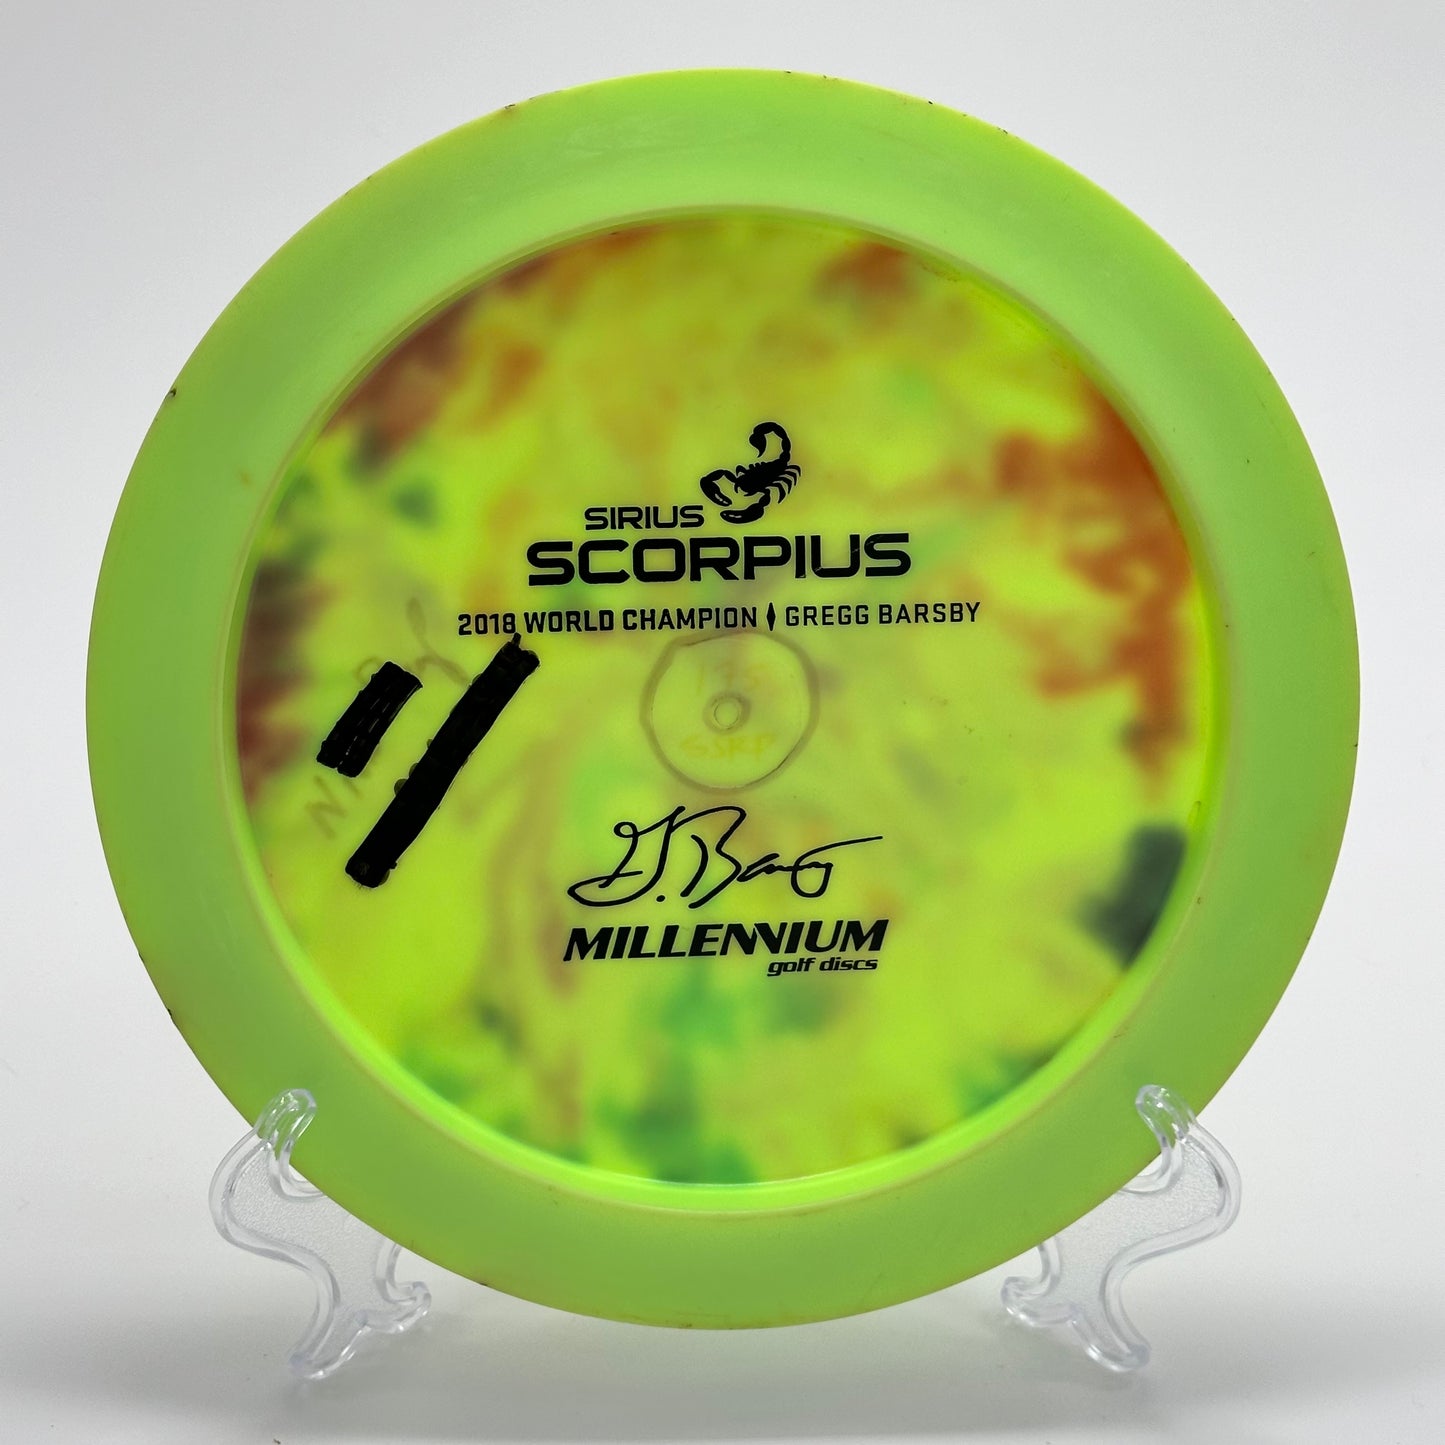 Millennium Scorpius | Sirius 1.10 Gregg Barsby 2018 World Champion Bottom Stamp